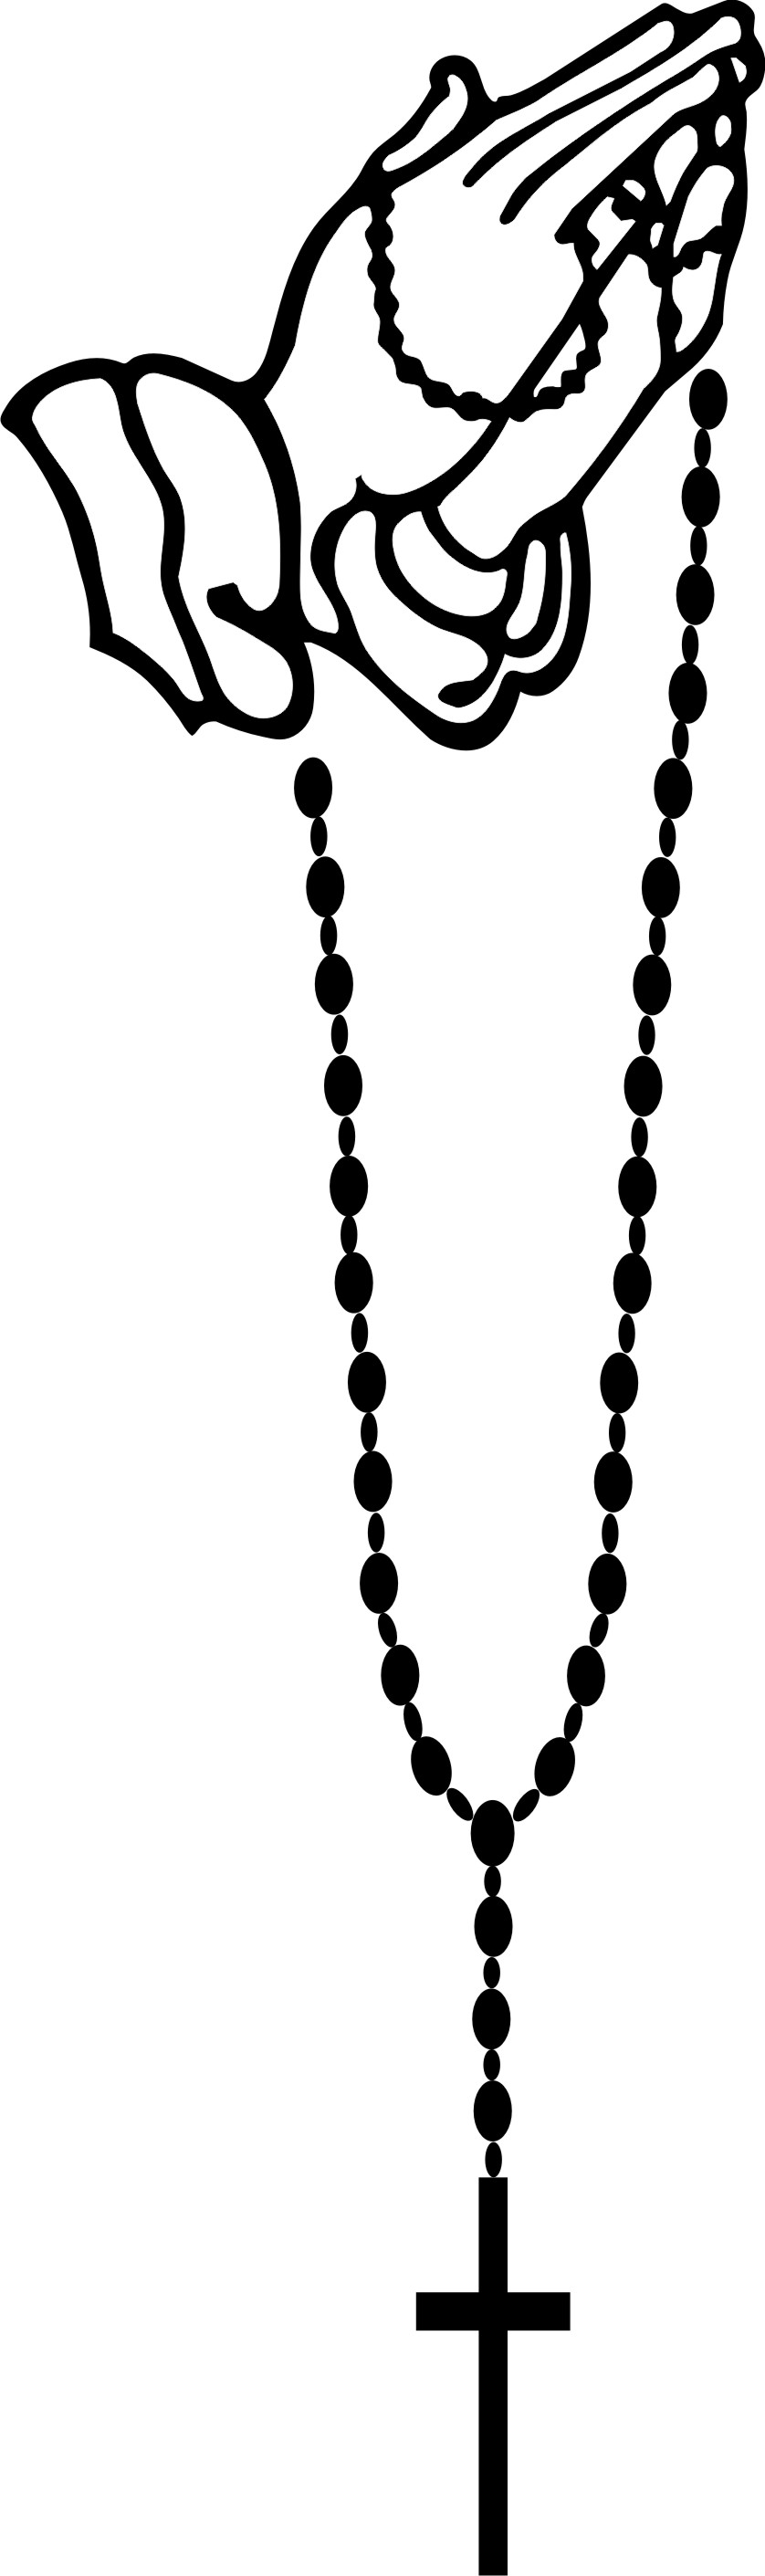 Pray the rosary clipart